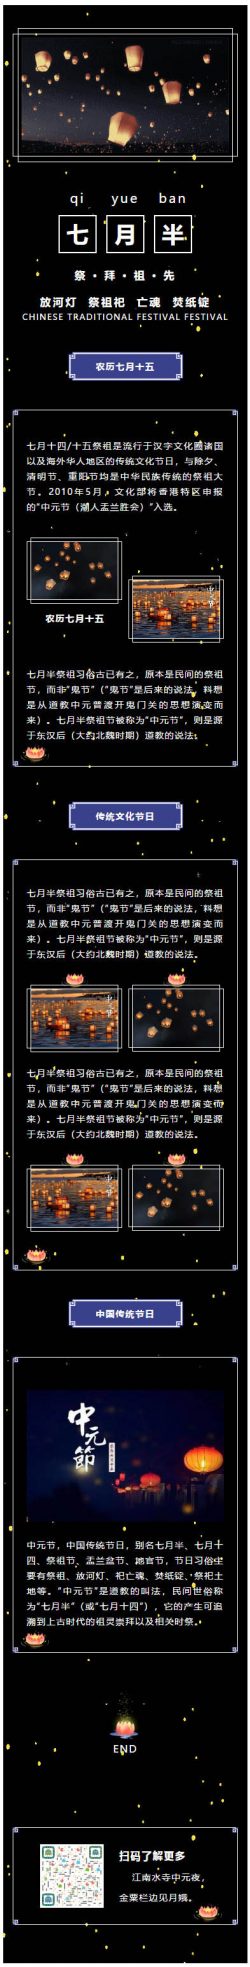 中元节七月半祭祖鬼节微信模板中国传统节日动态背景图孔明灯